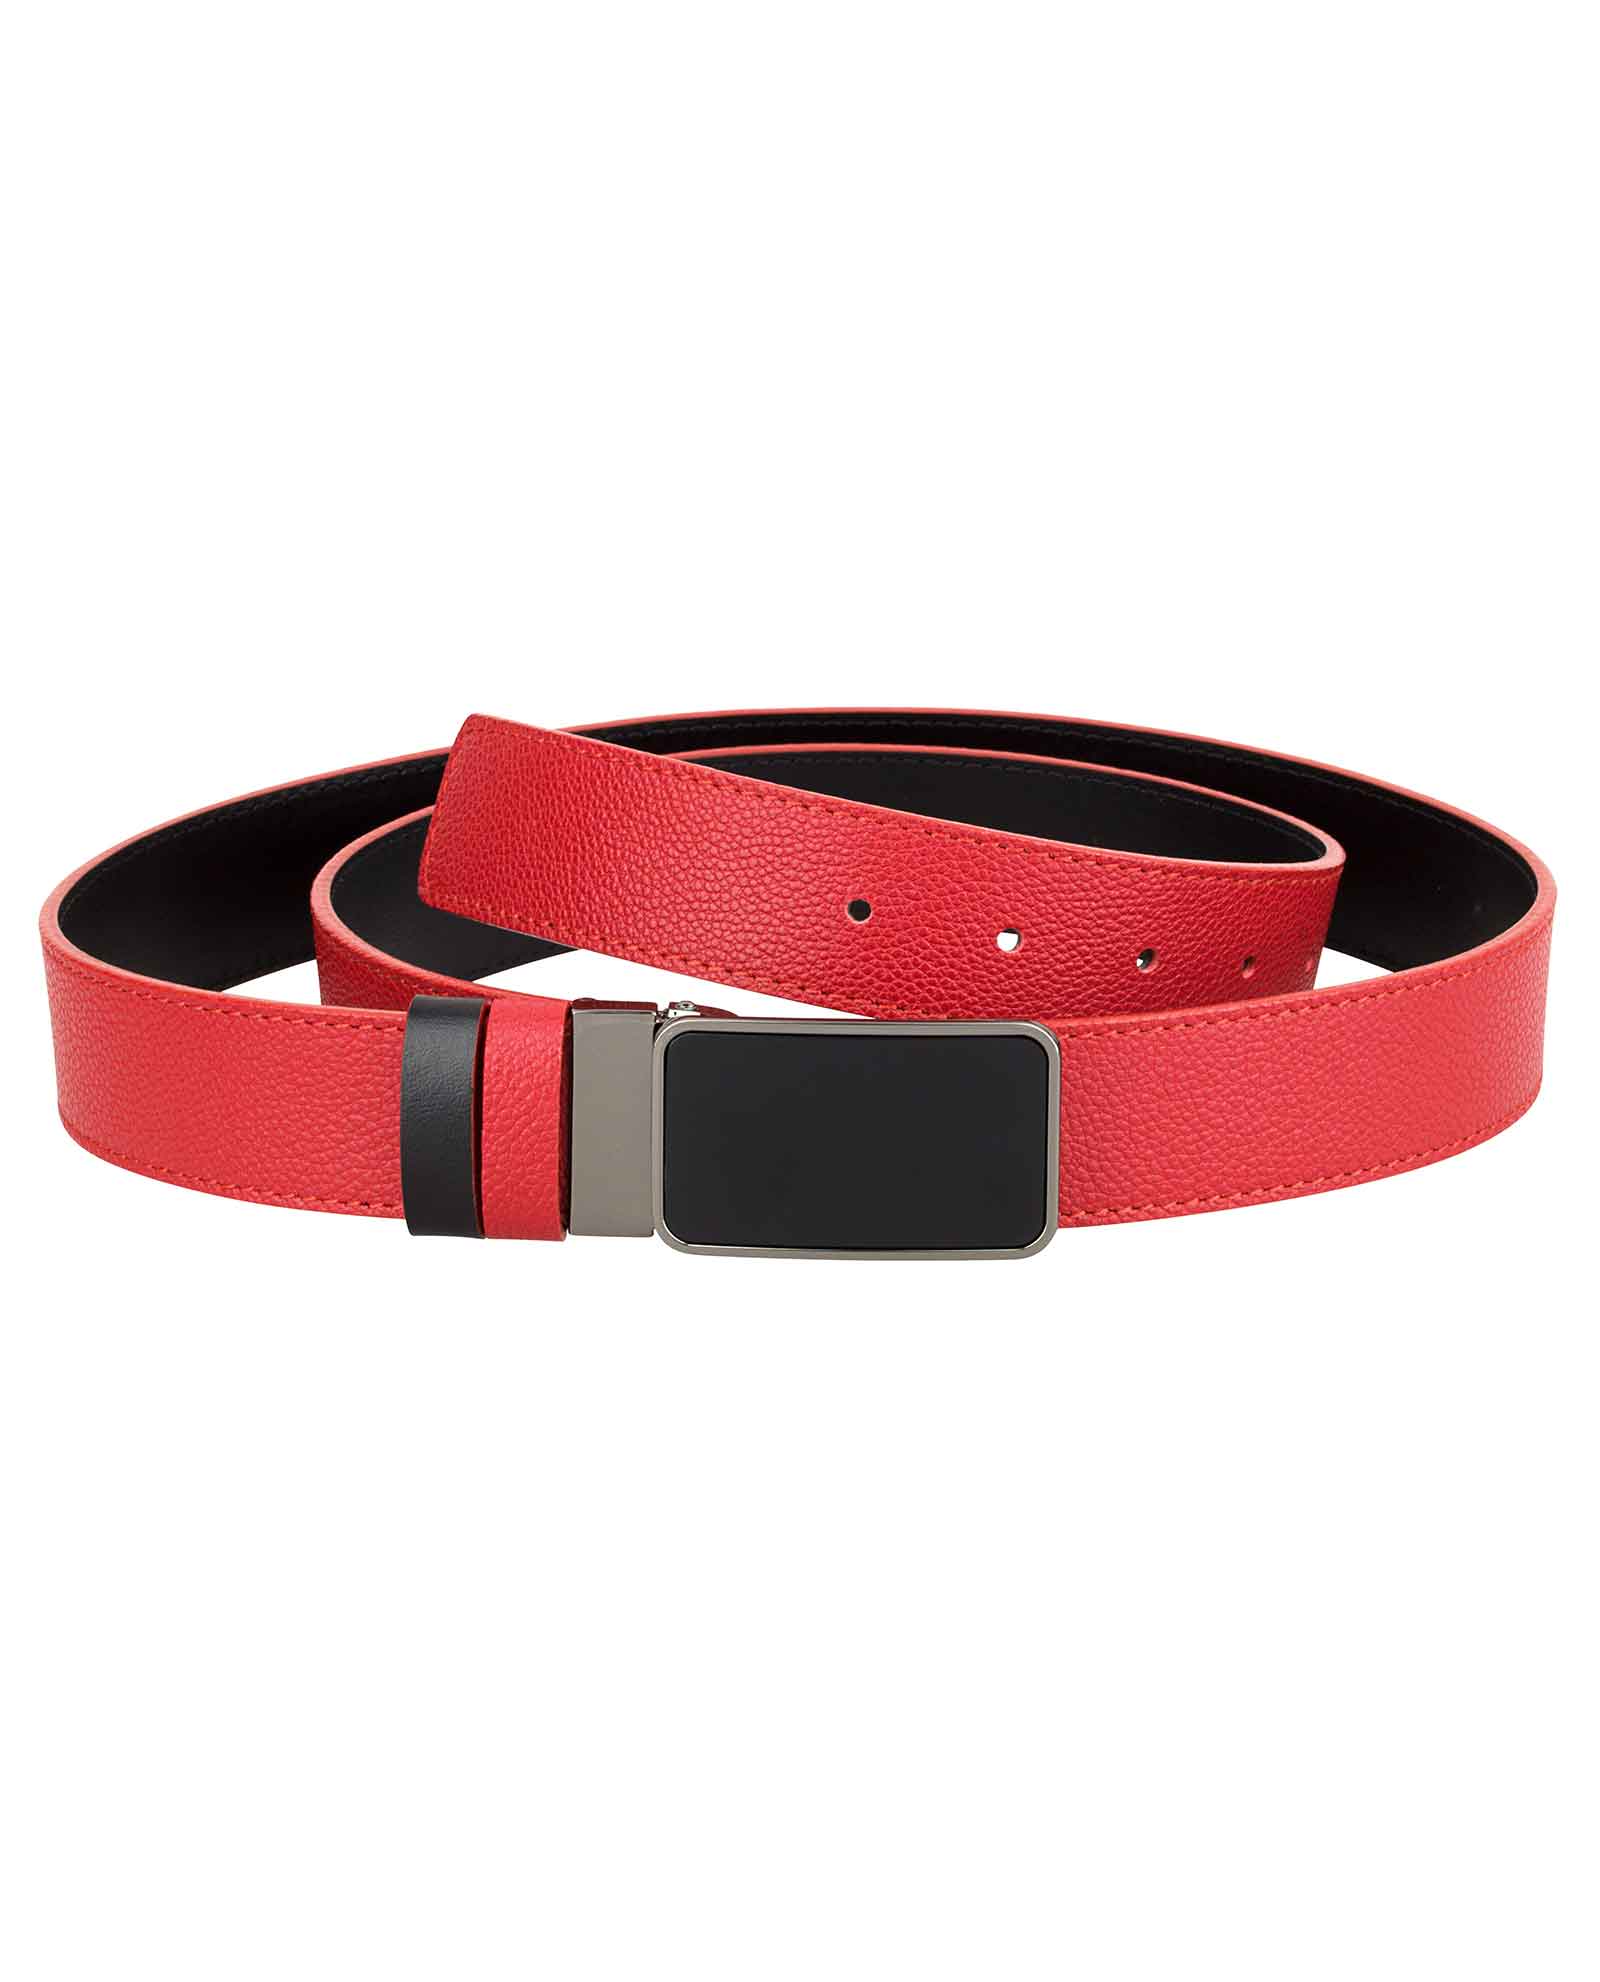 Buy Red Belt for Men - Reversible to Black - 0